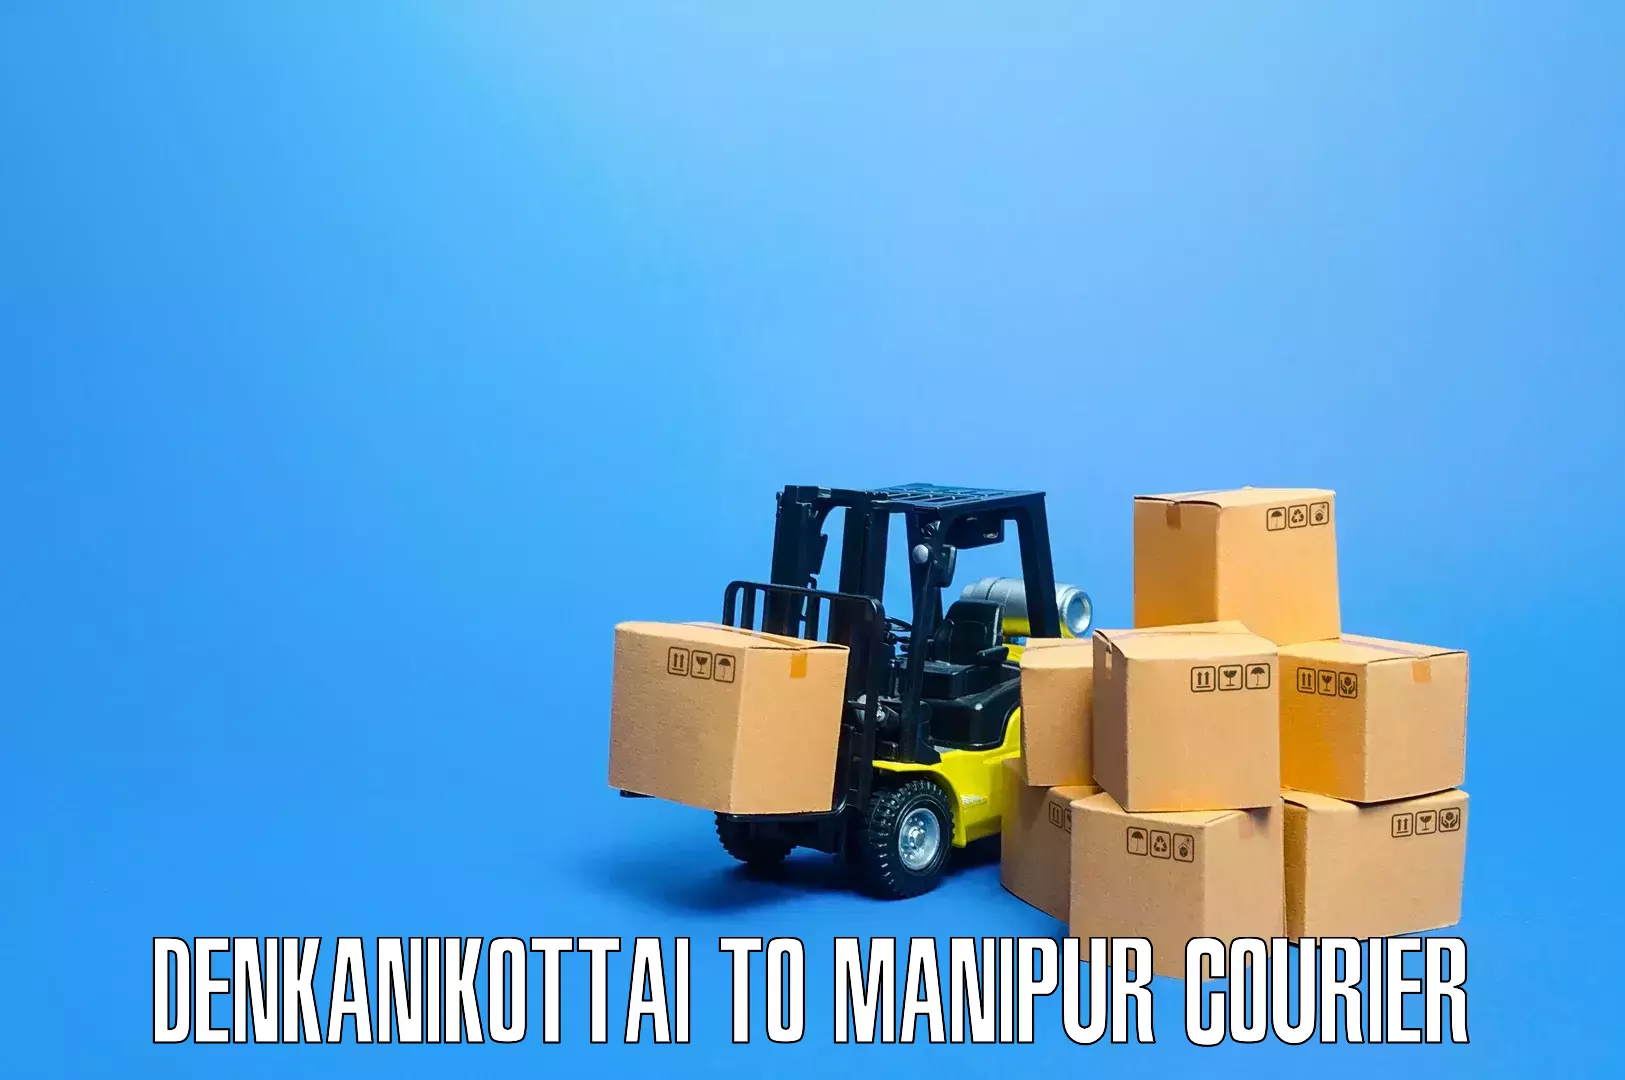 Skilled movers Denkanikottai to Manipur